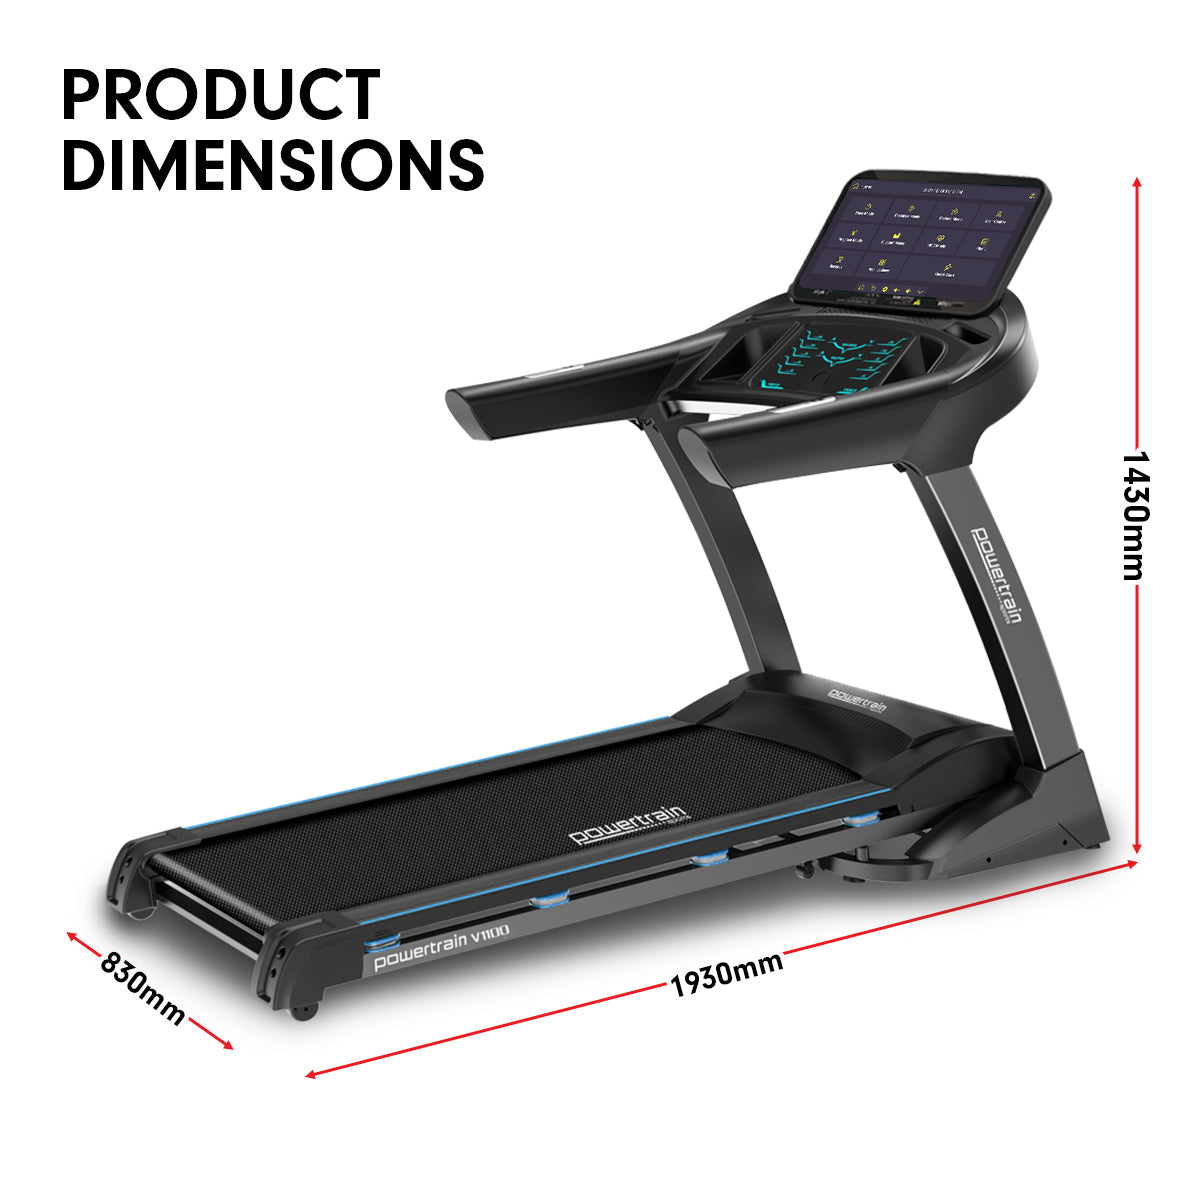 Powertrain V1100 Treadmill